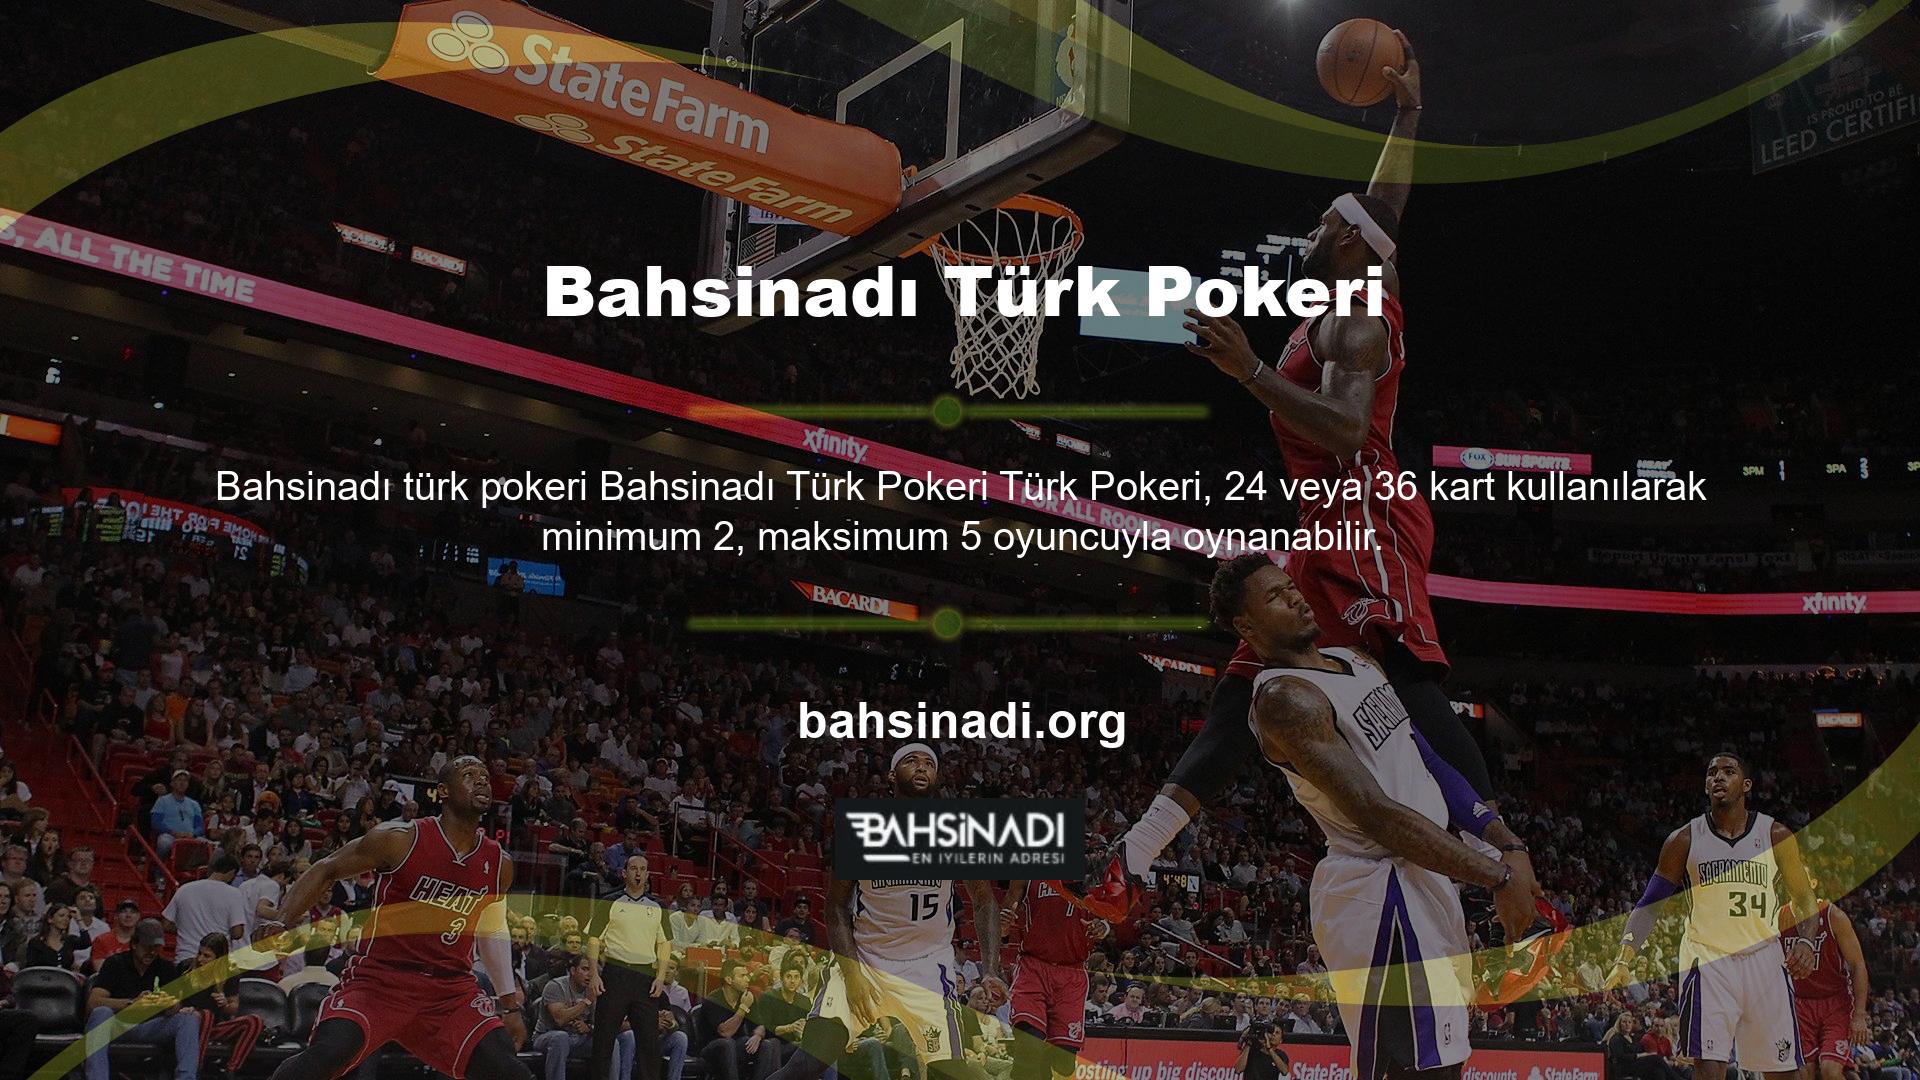 Türk Pokeri, oyunculara kapalı olarak beş kart dağıtılmasıyla başlar ve ilk tur, dağıtıcının kartları saat yönünde dağıttığı ve oyuncuların ilerlemelerine bağlı olarak rakip çağırdığı veya eklediği ilk turla başlar